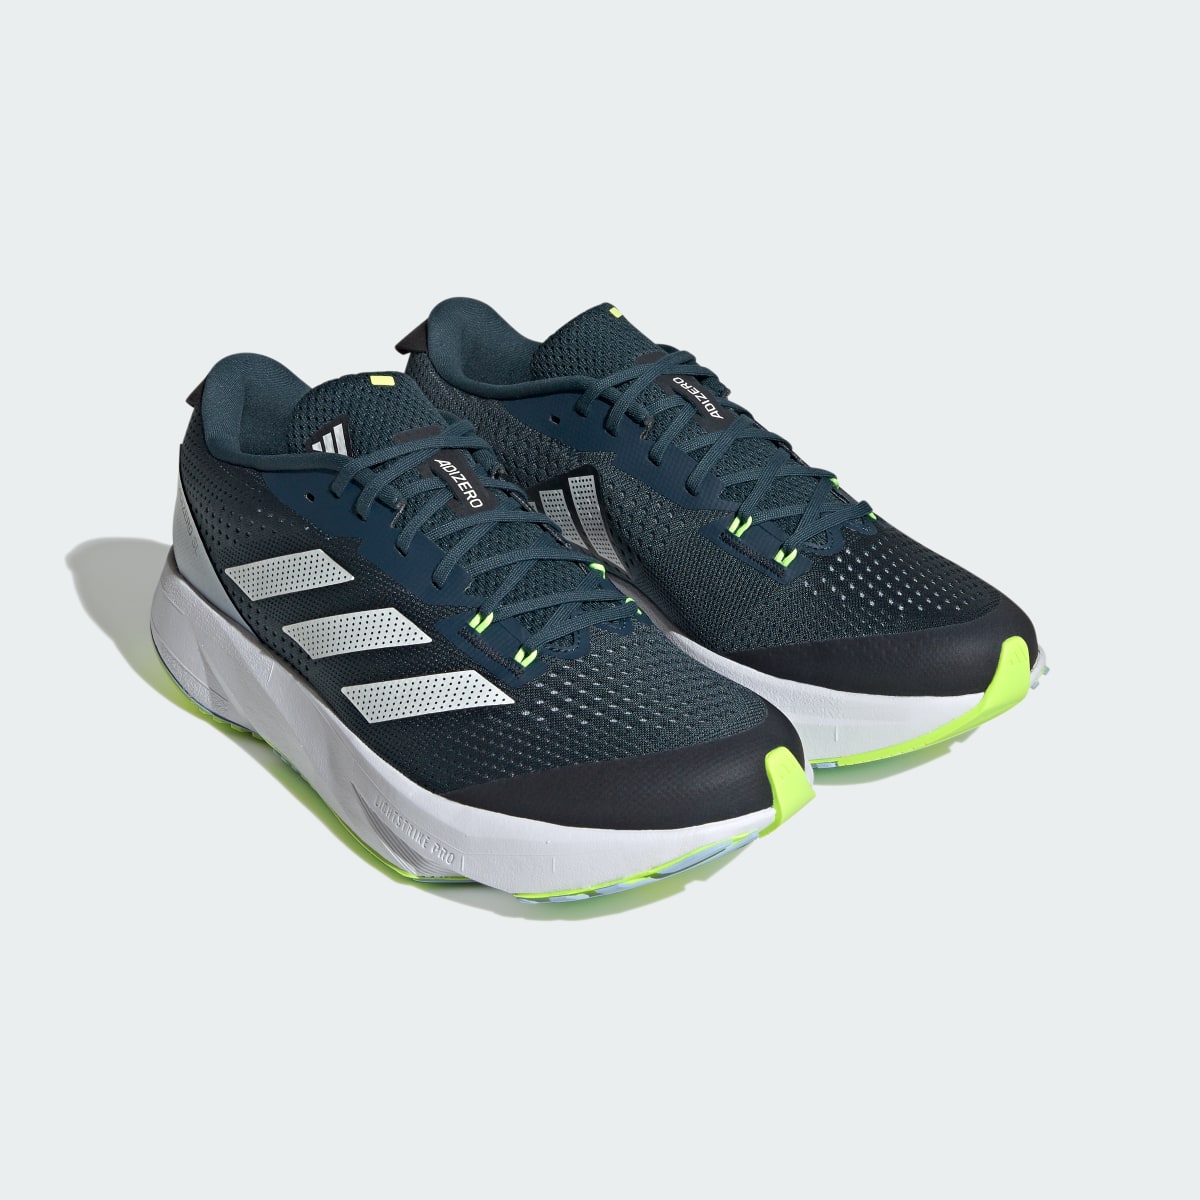 Adidas Adizero SL Running Shoes. 5